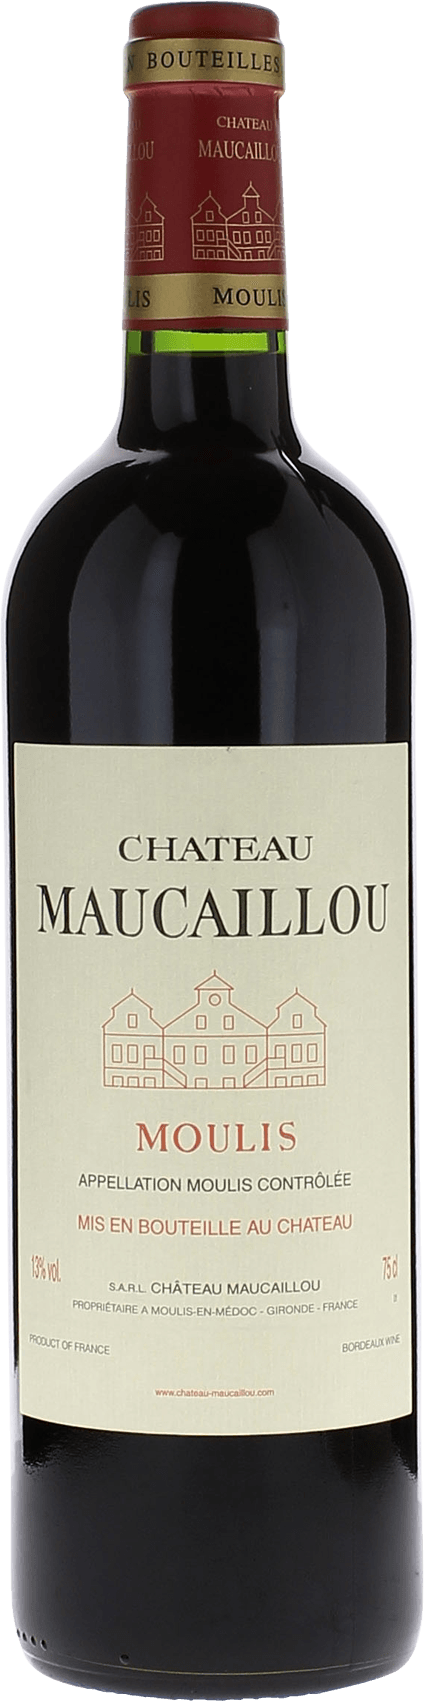 Maucaillou 1995 Cru Bourgeois Suprieur Moulis, Bordeaux rouge